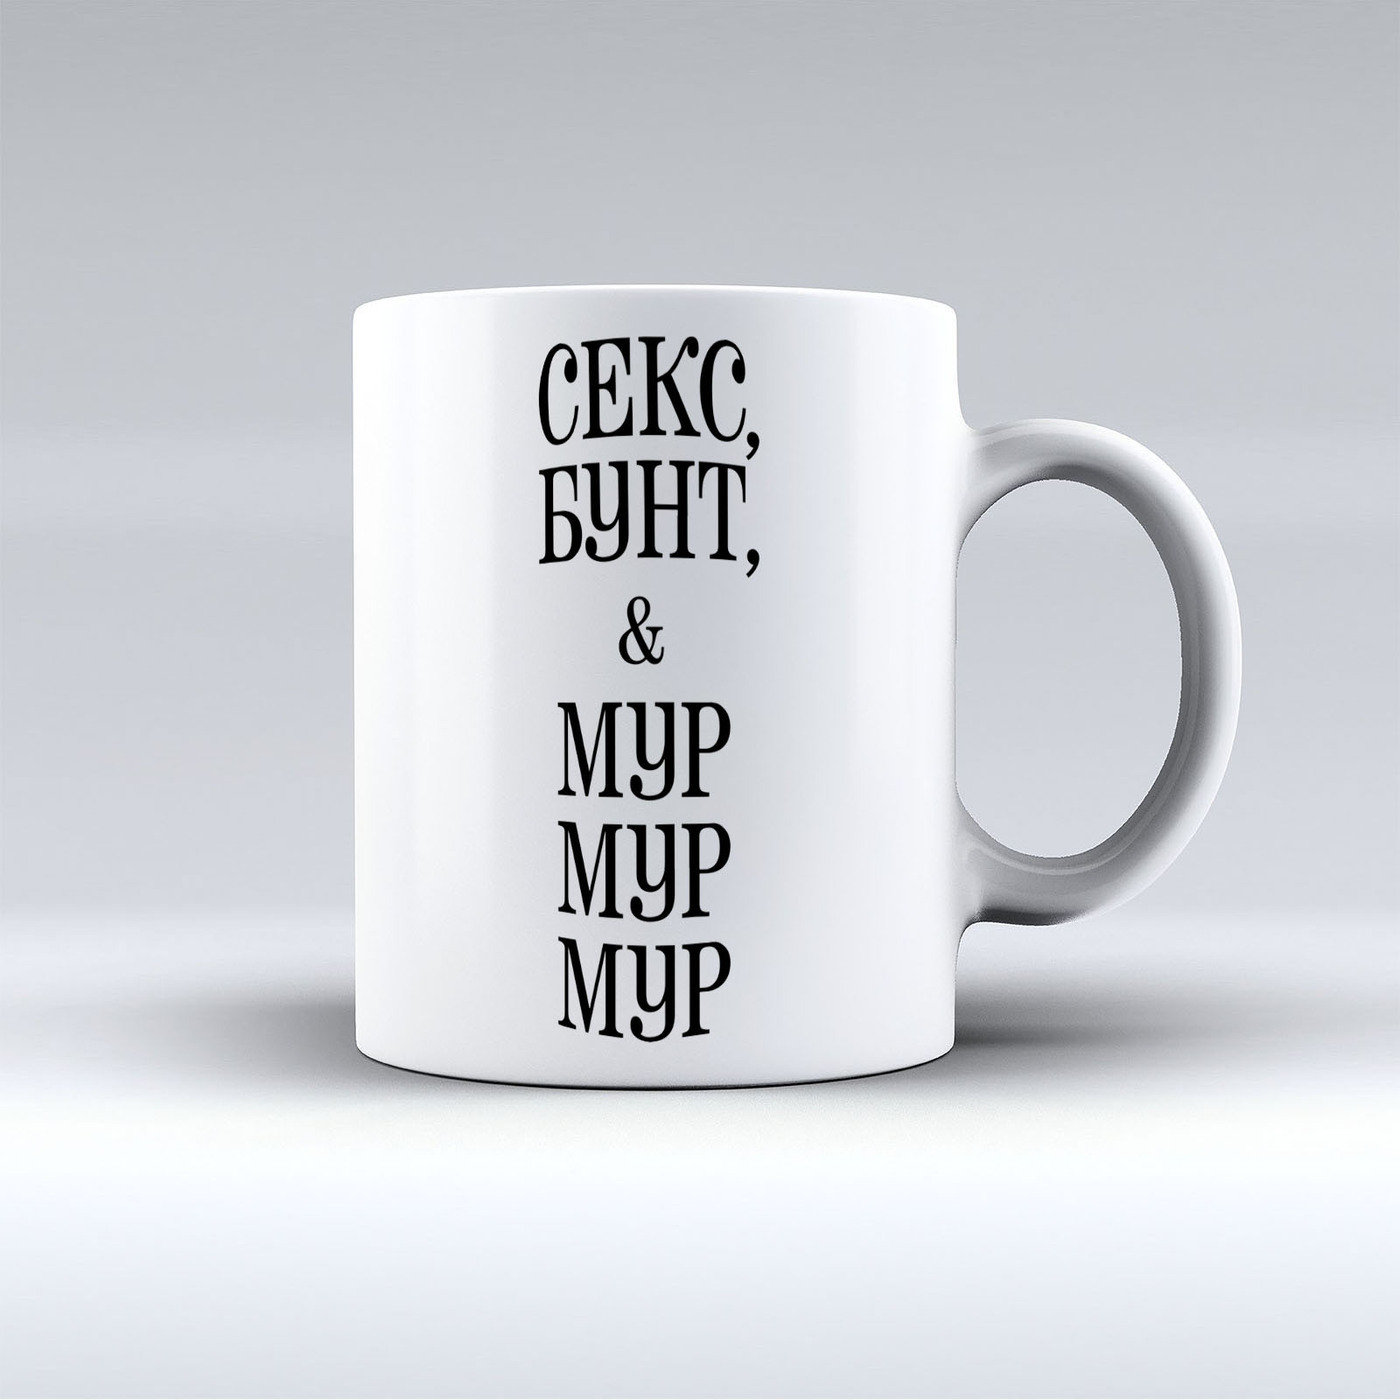 Qpb club moby dick coffee mug ebay